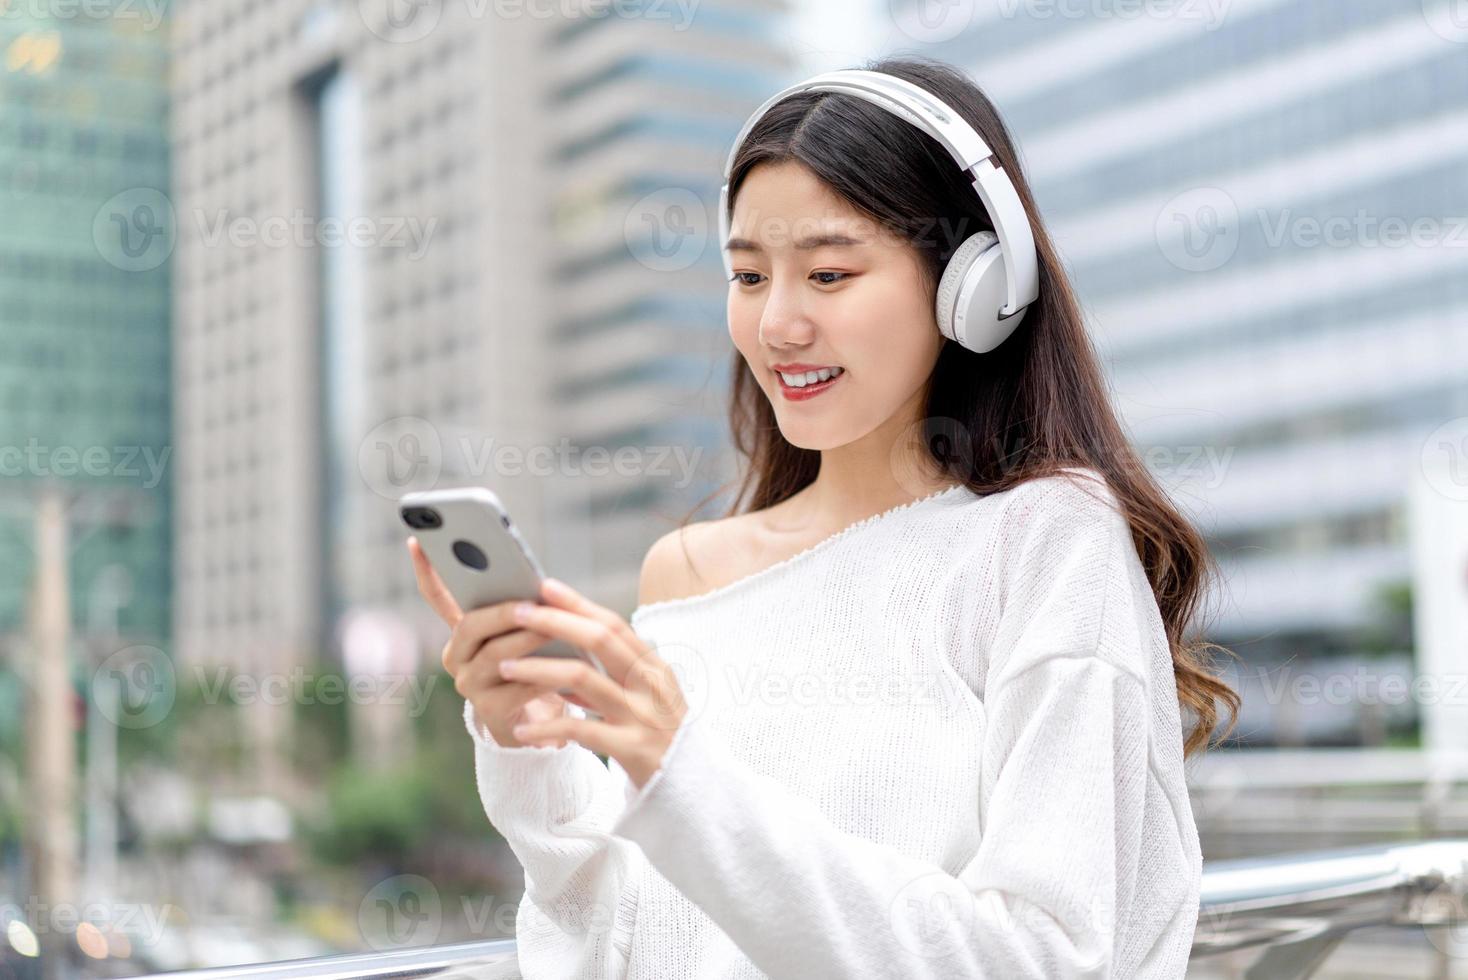 jovem garota asiática usando fones de ouvido ouvindo música do celular contra o fundo do edifício da cidade foto